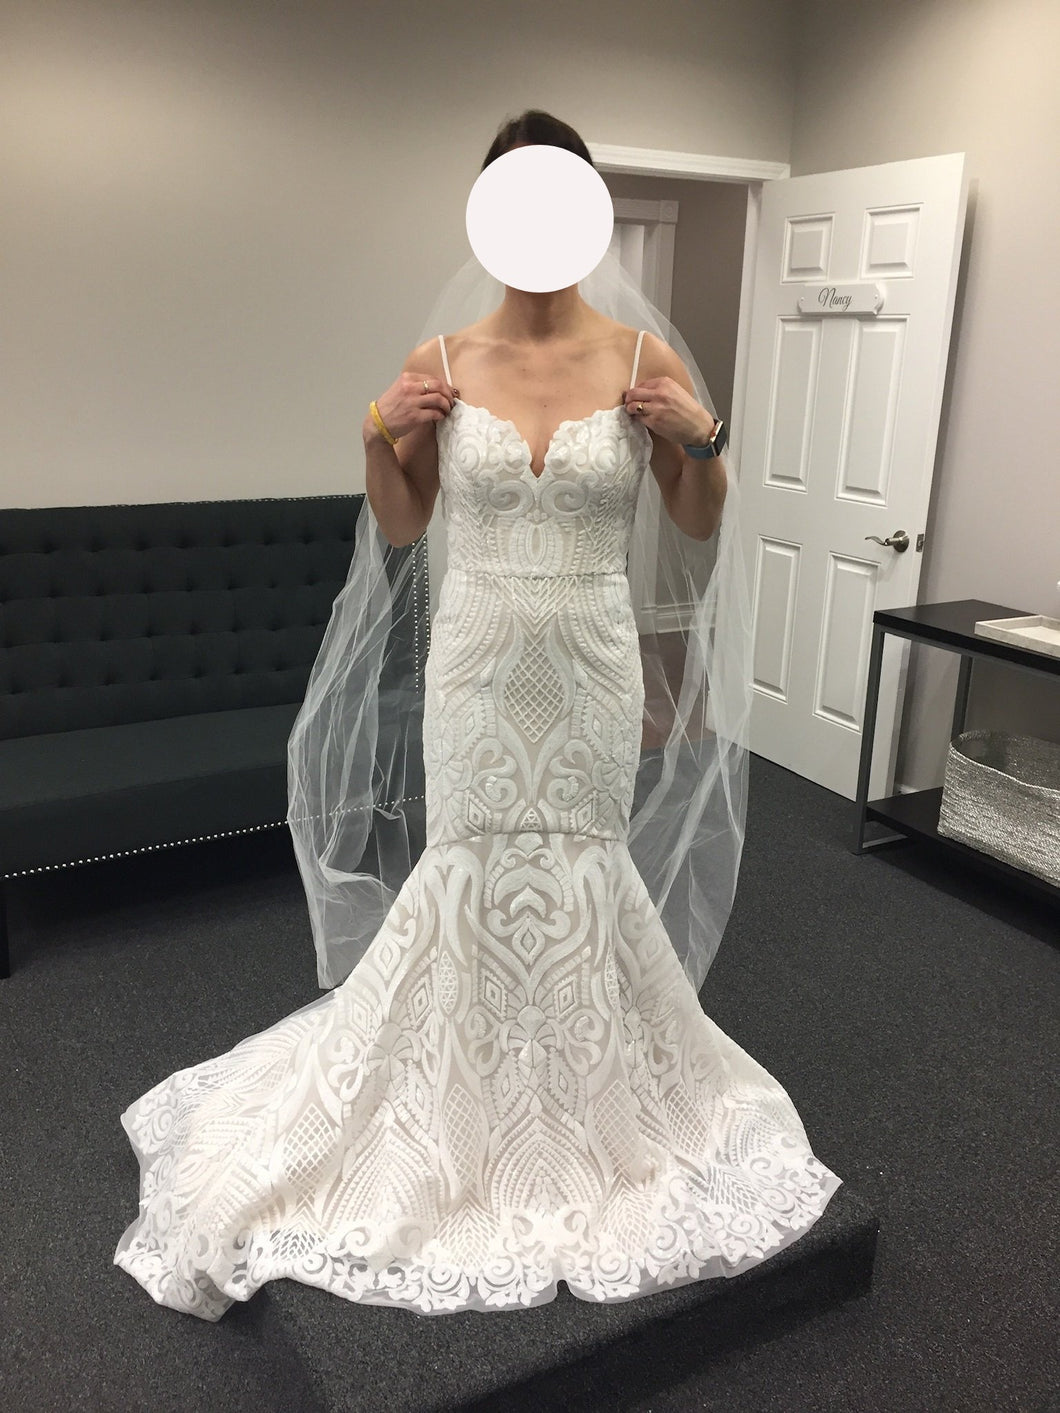 Hayley Paige 'West' wedding dress size-04 NEW